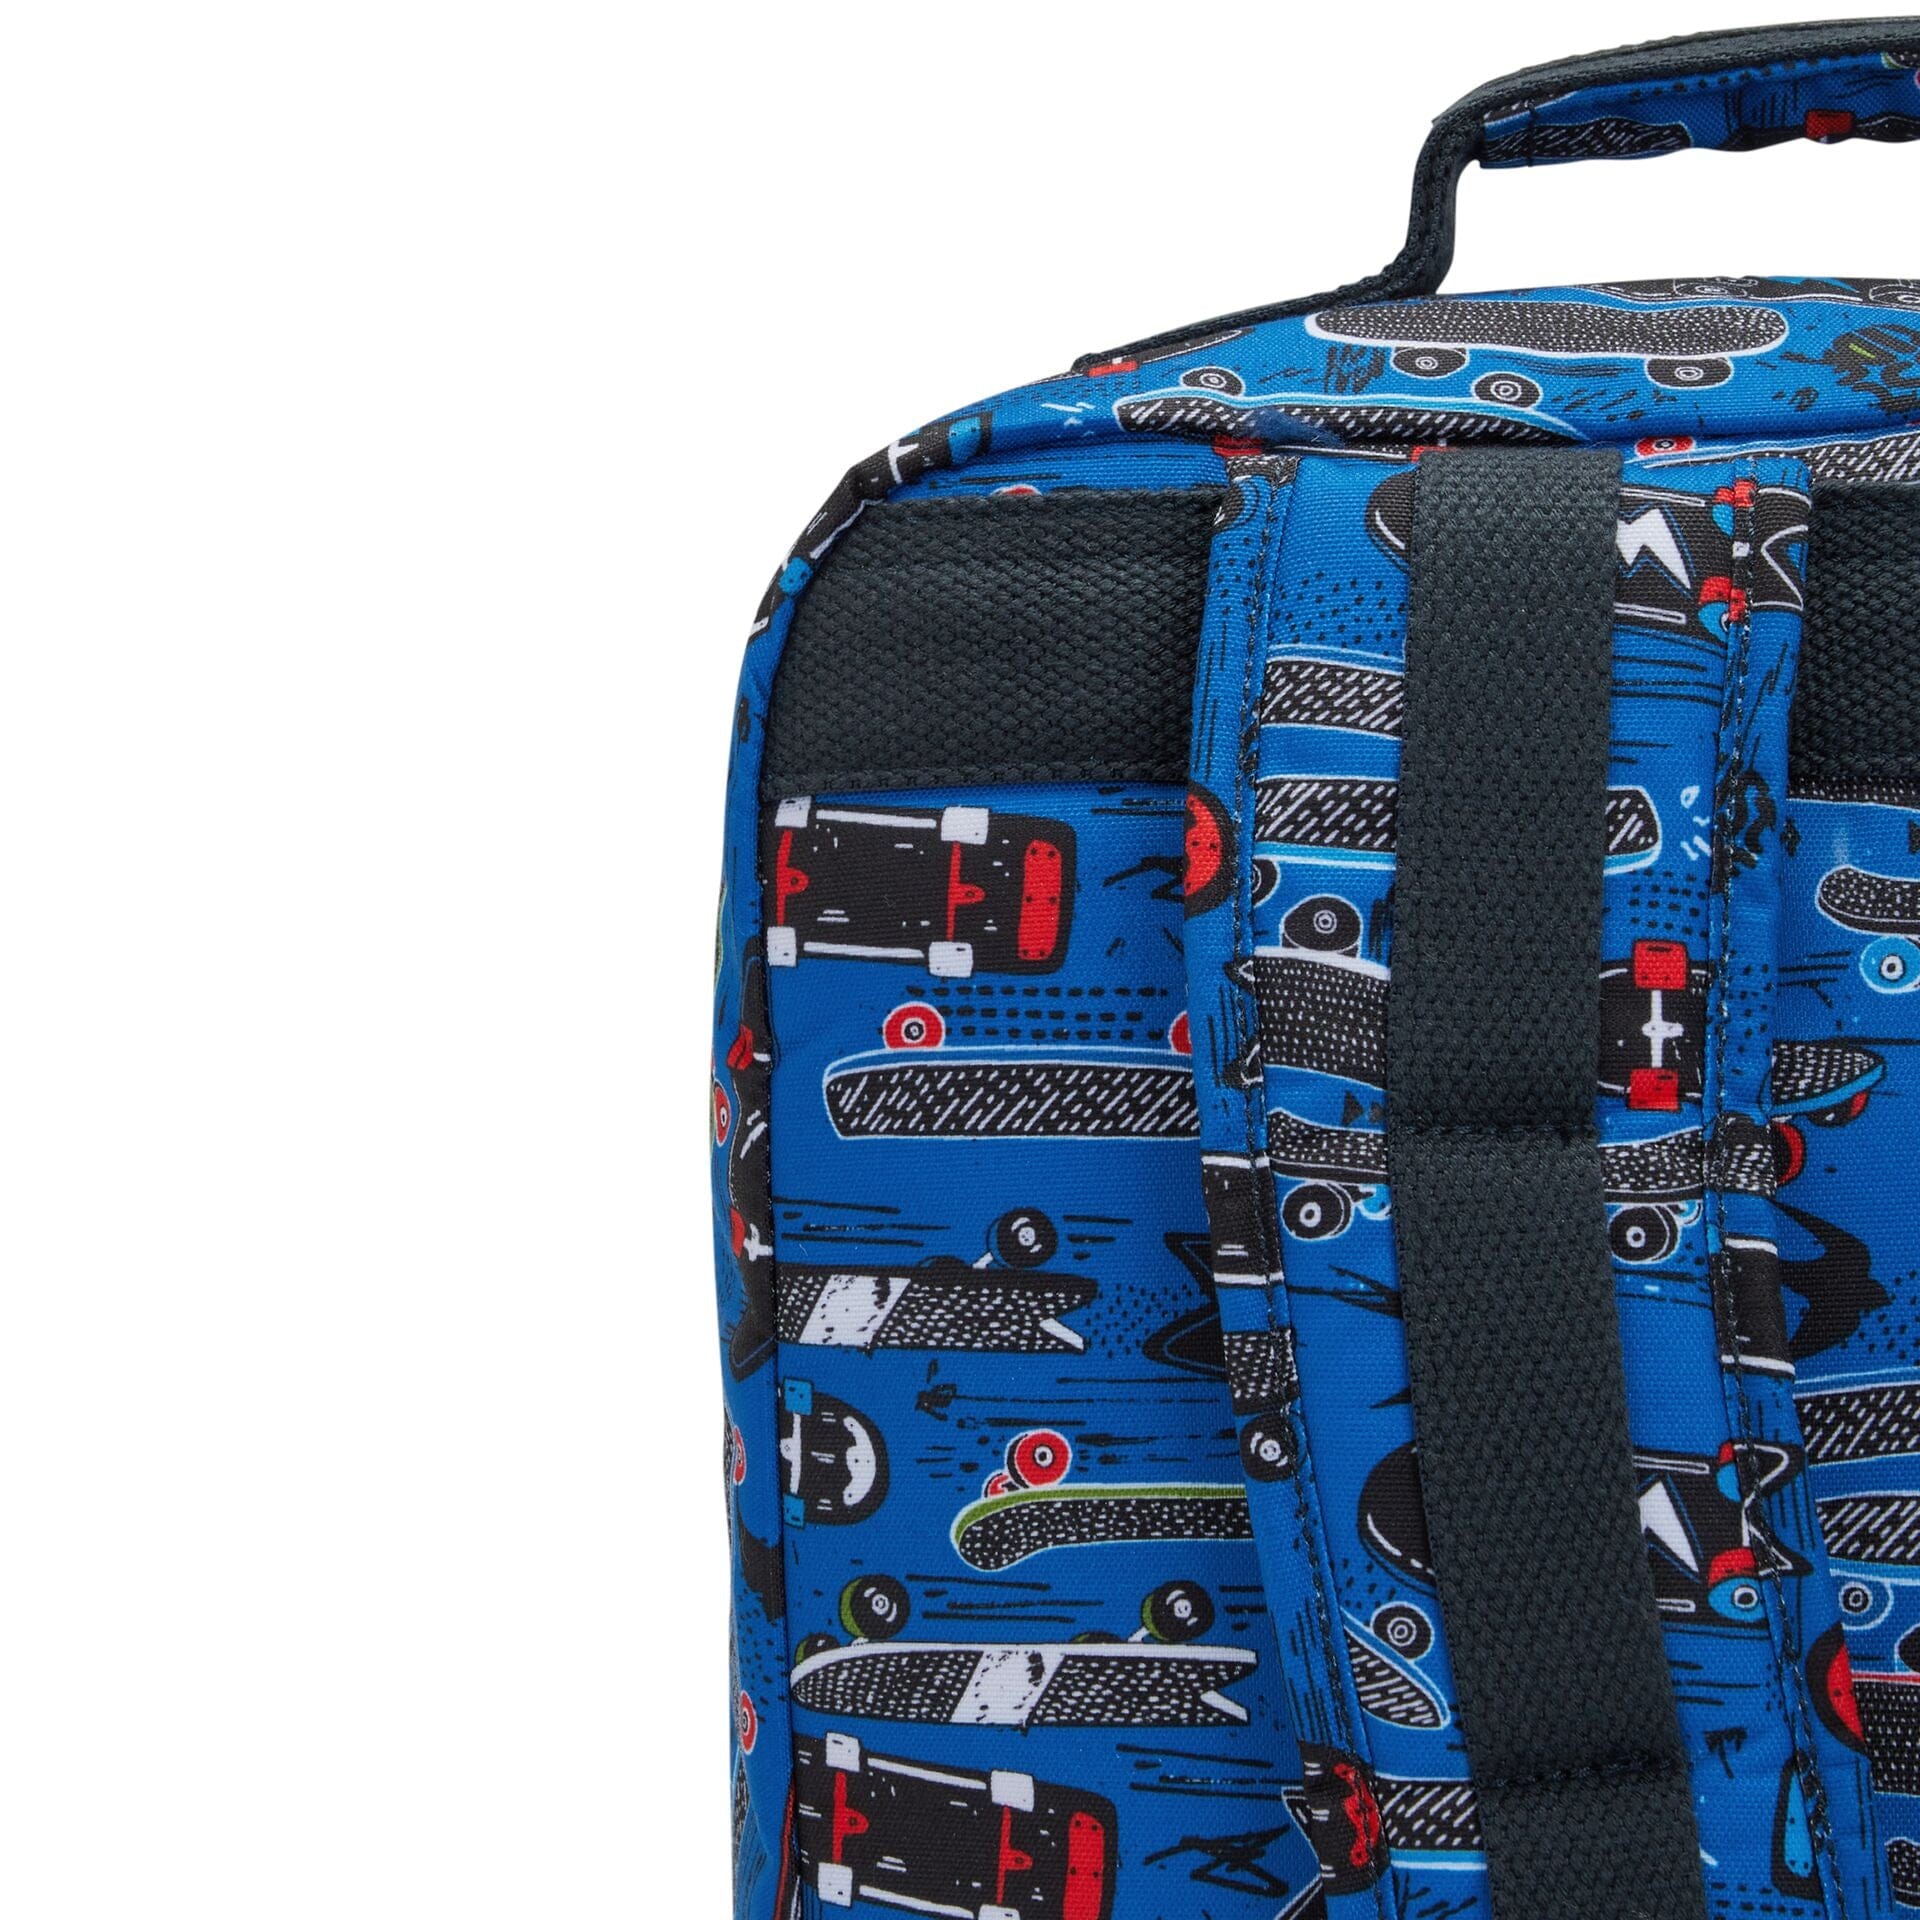 KIPLING-Scotty-large backpack-New Scate Prt S-I7151-Y35